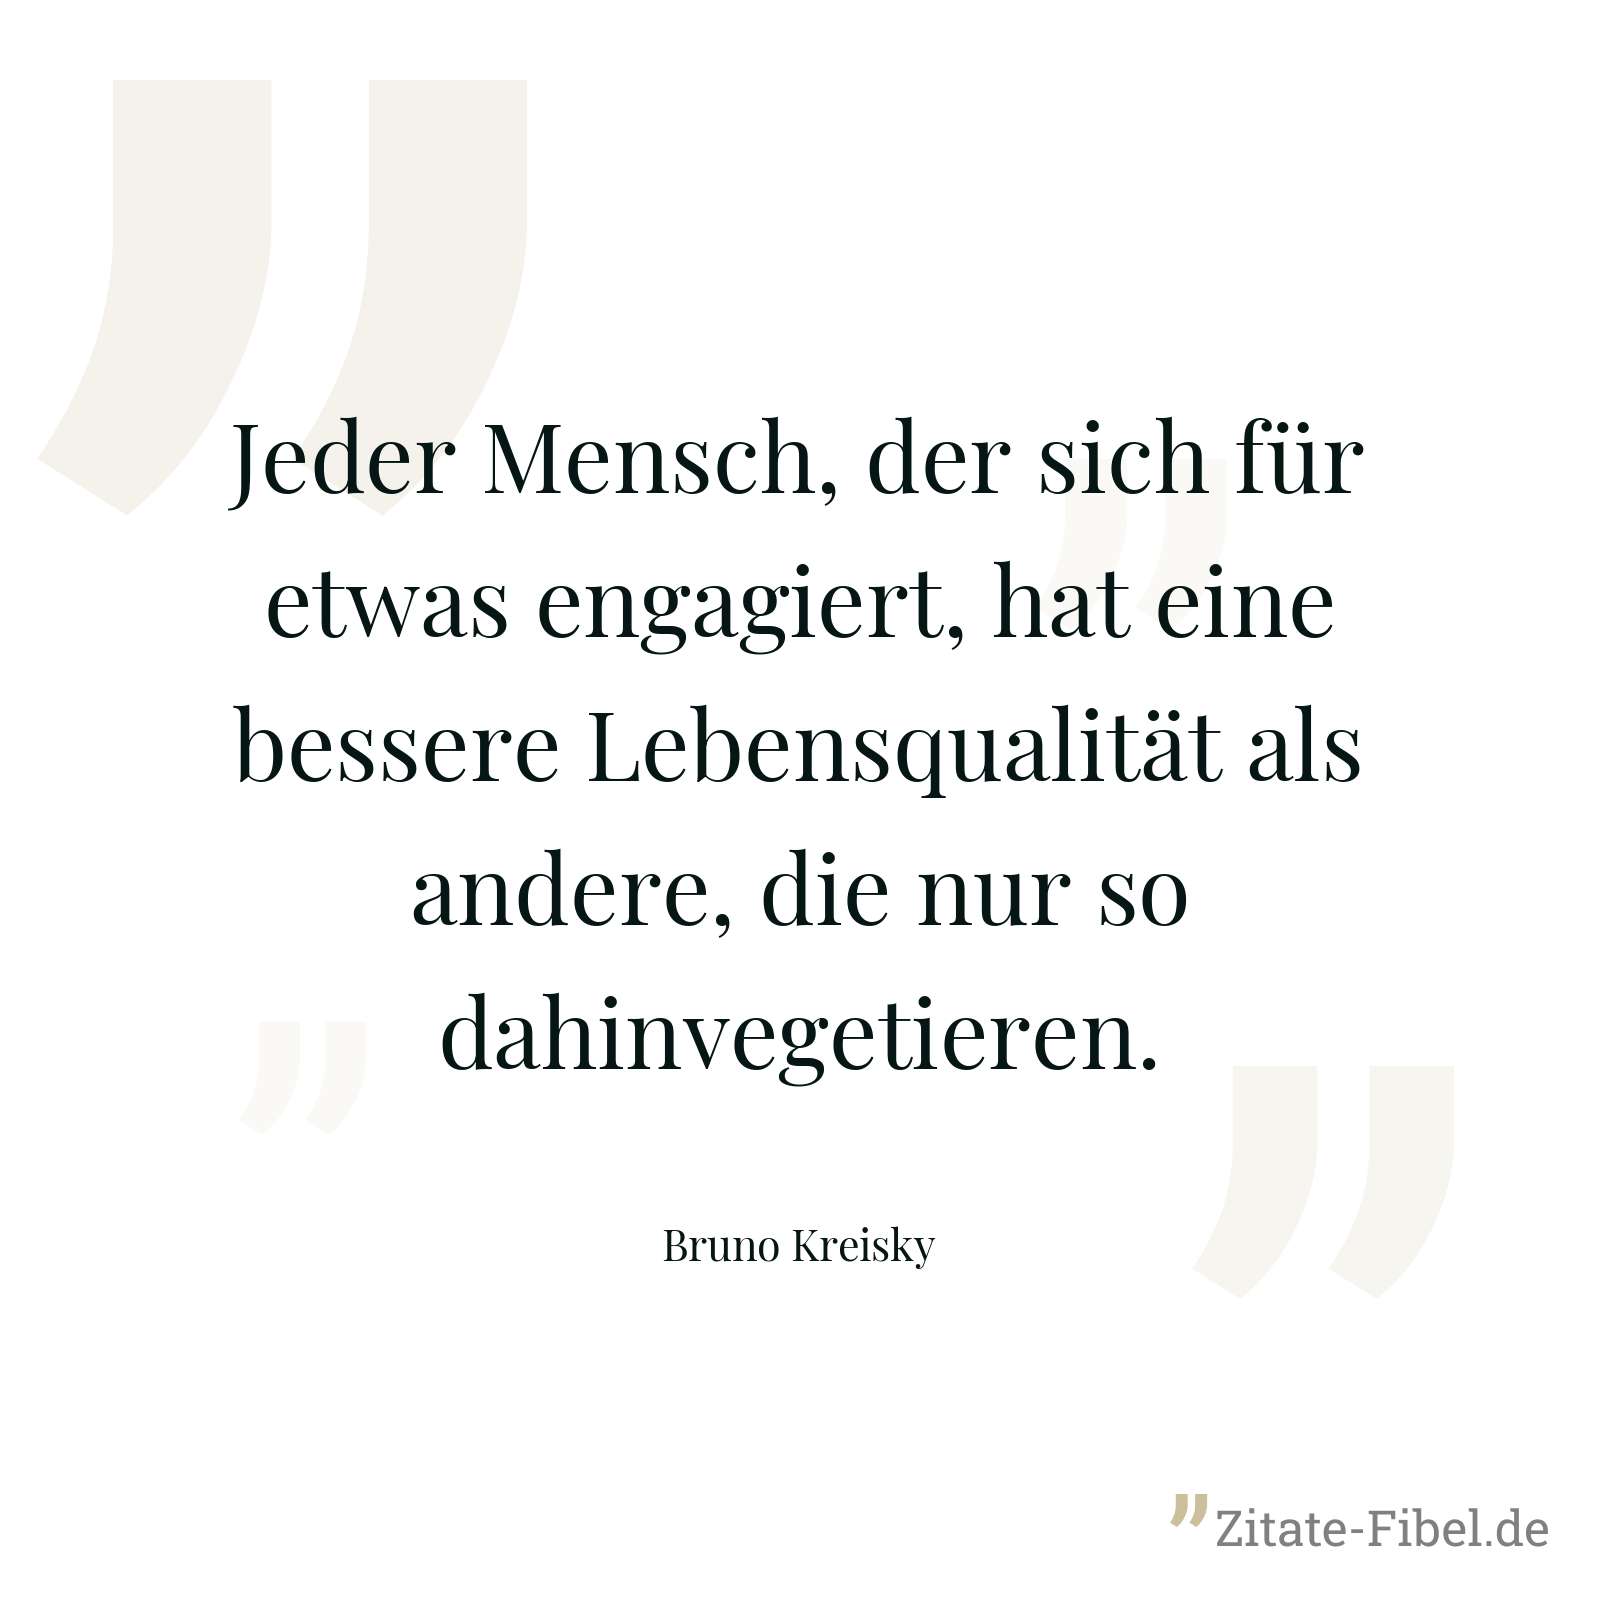 Jeder Mensch, der sich für etwas engagiert, hat eine bessere Lebensqualität als andere, die nur so dahinvegetieren. - Bruno Kreisky